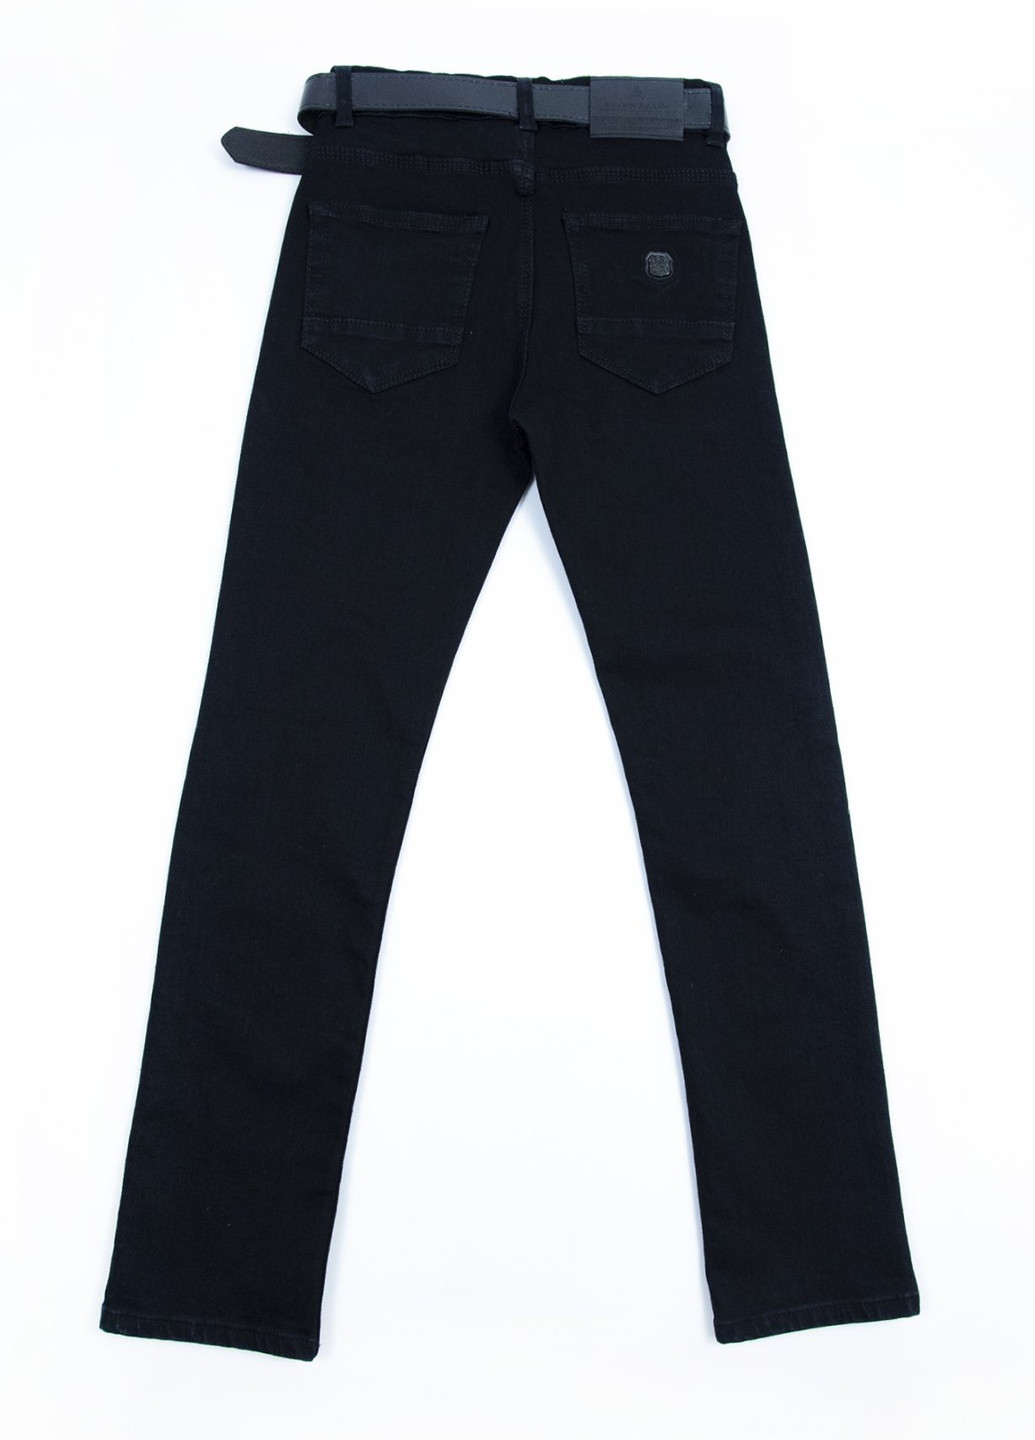 Черные демисезонные прямые джинсы для мальчика черные прямые Altun